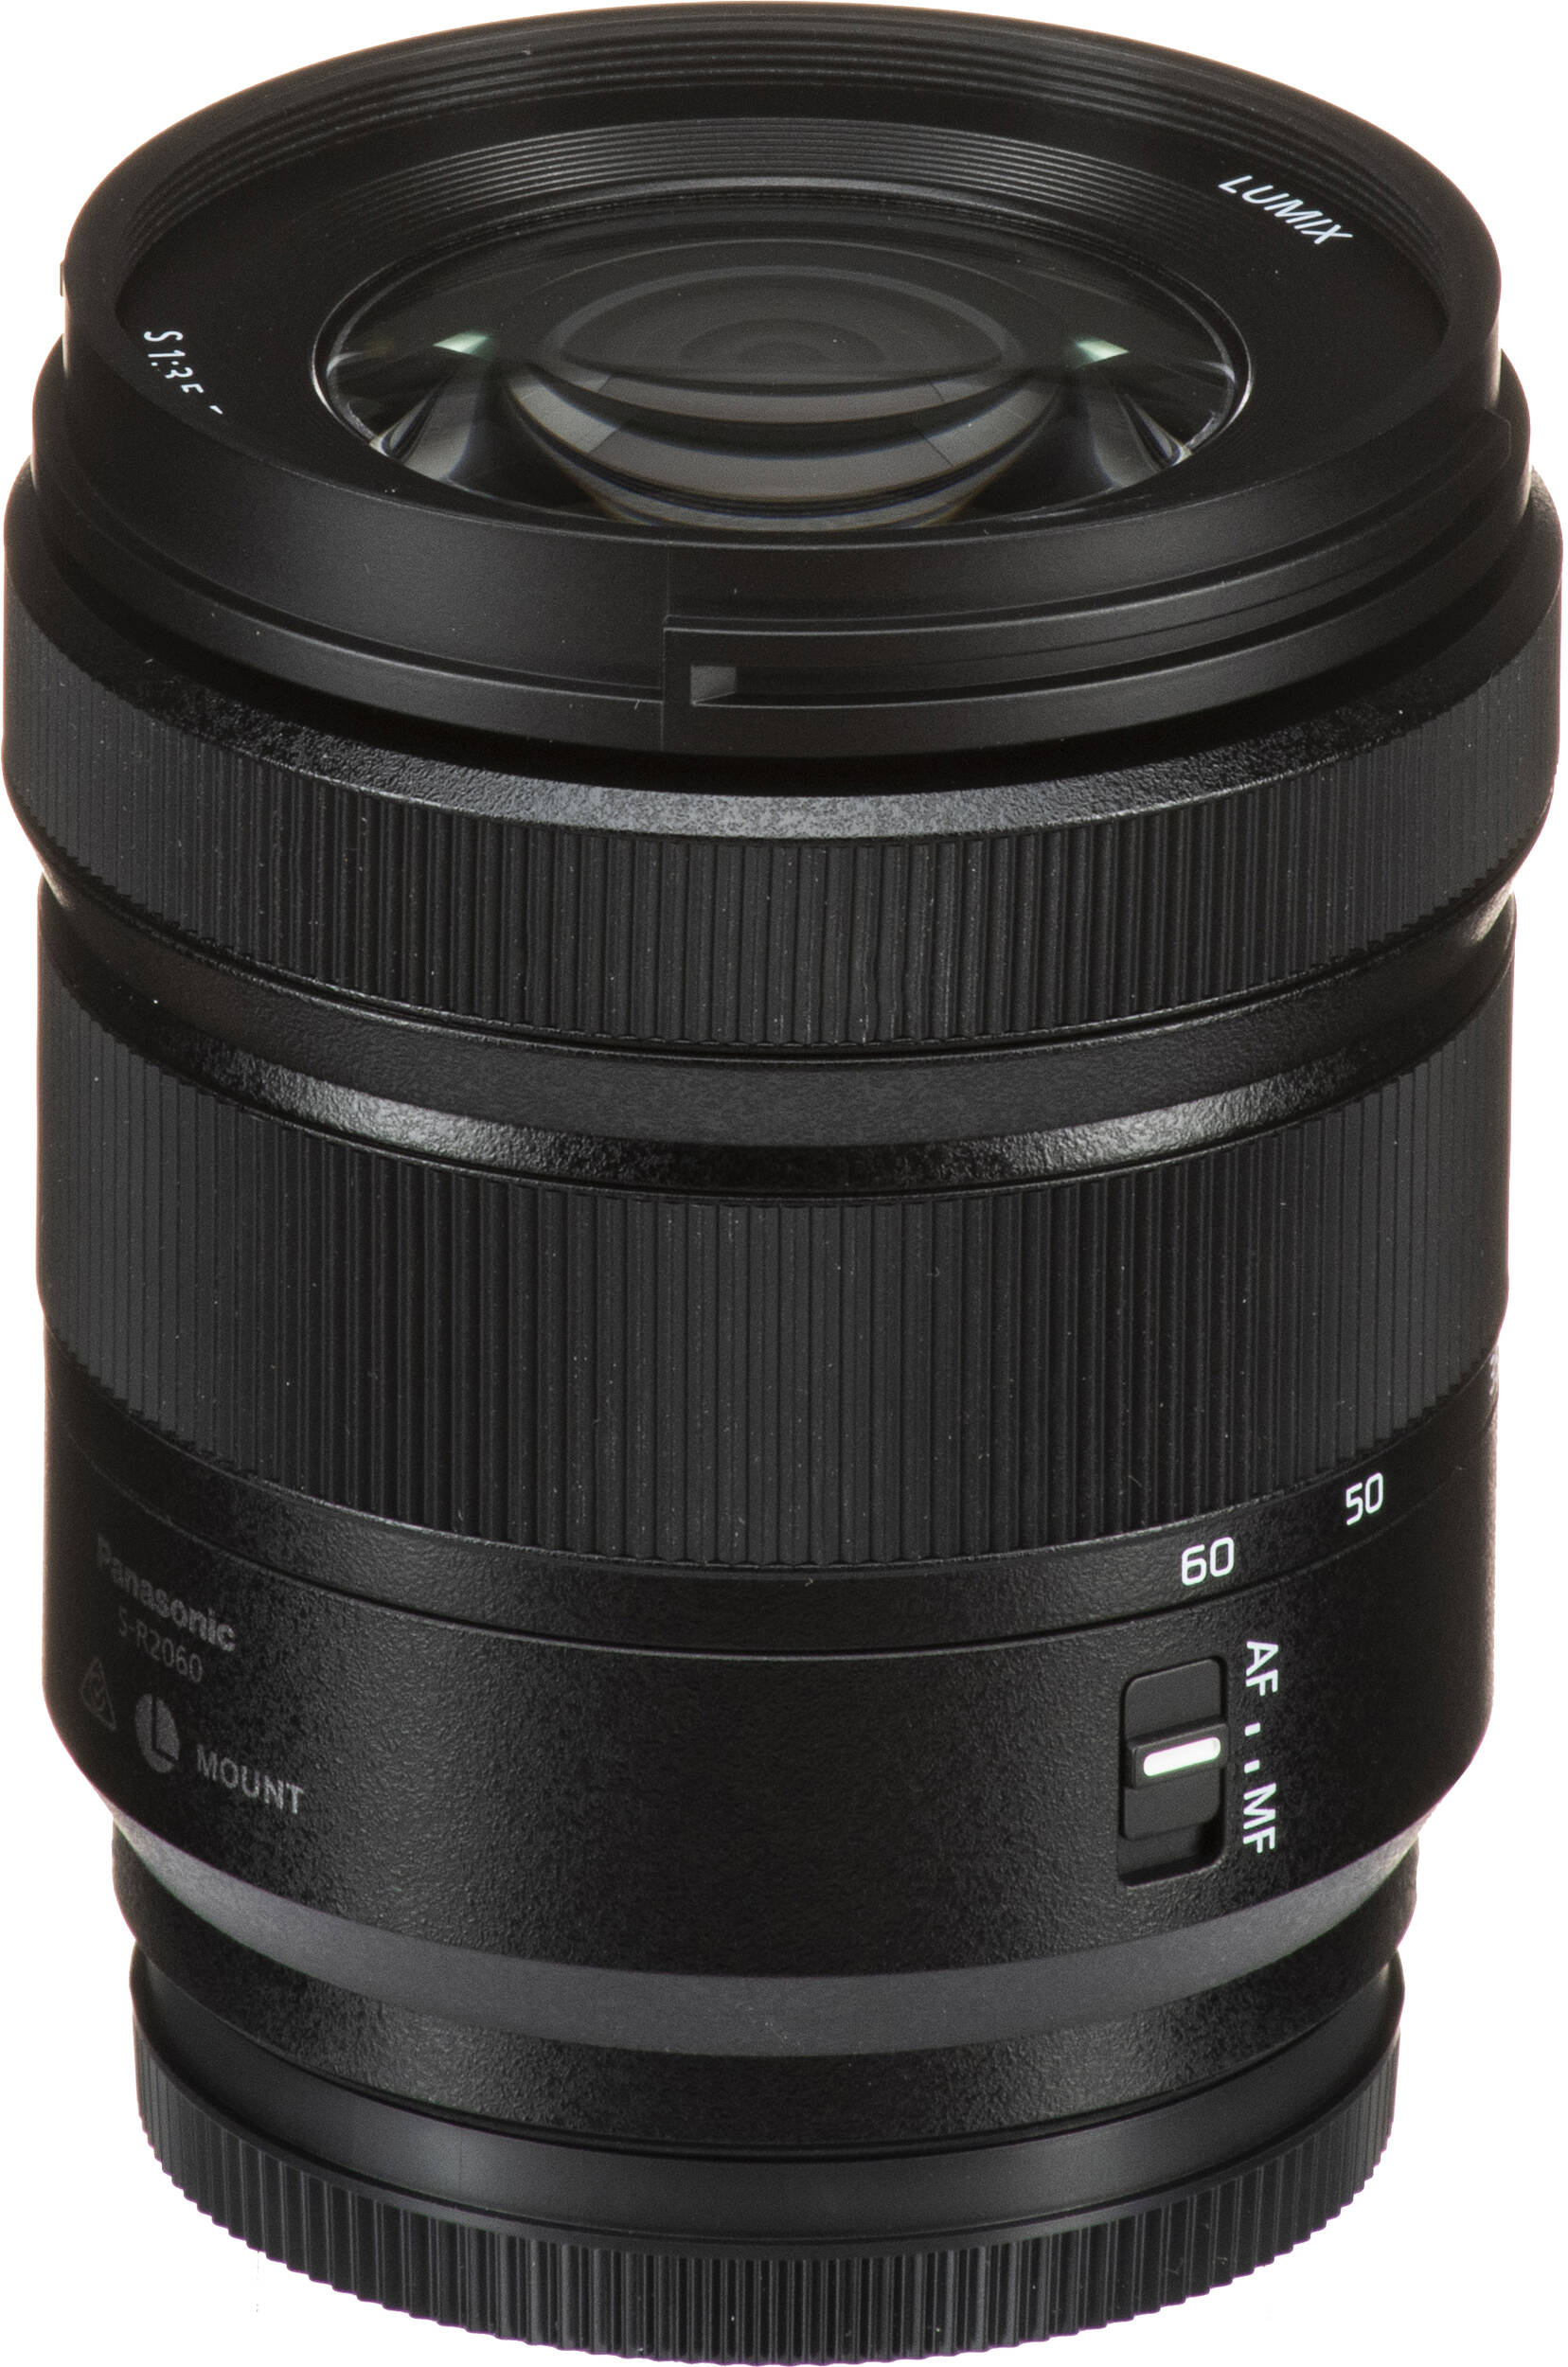 Фотоапарат Panasonic Lumix DC-S9 + 20-60mm f/3.5-5.6 Dark Olive (DC-S9KE-G)фото24